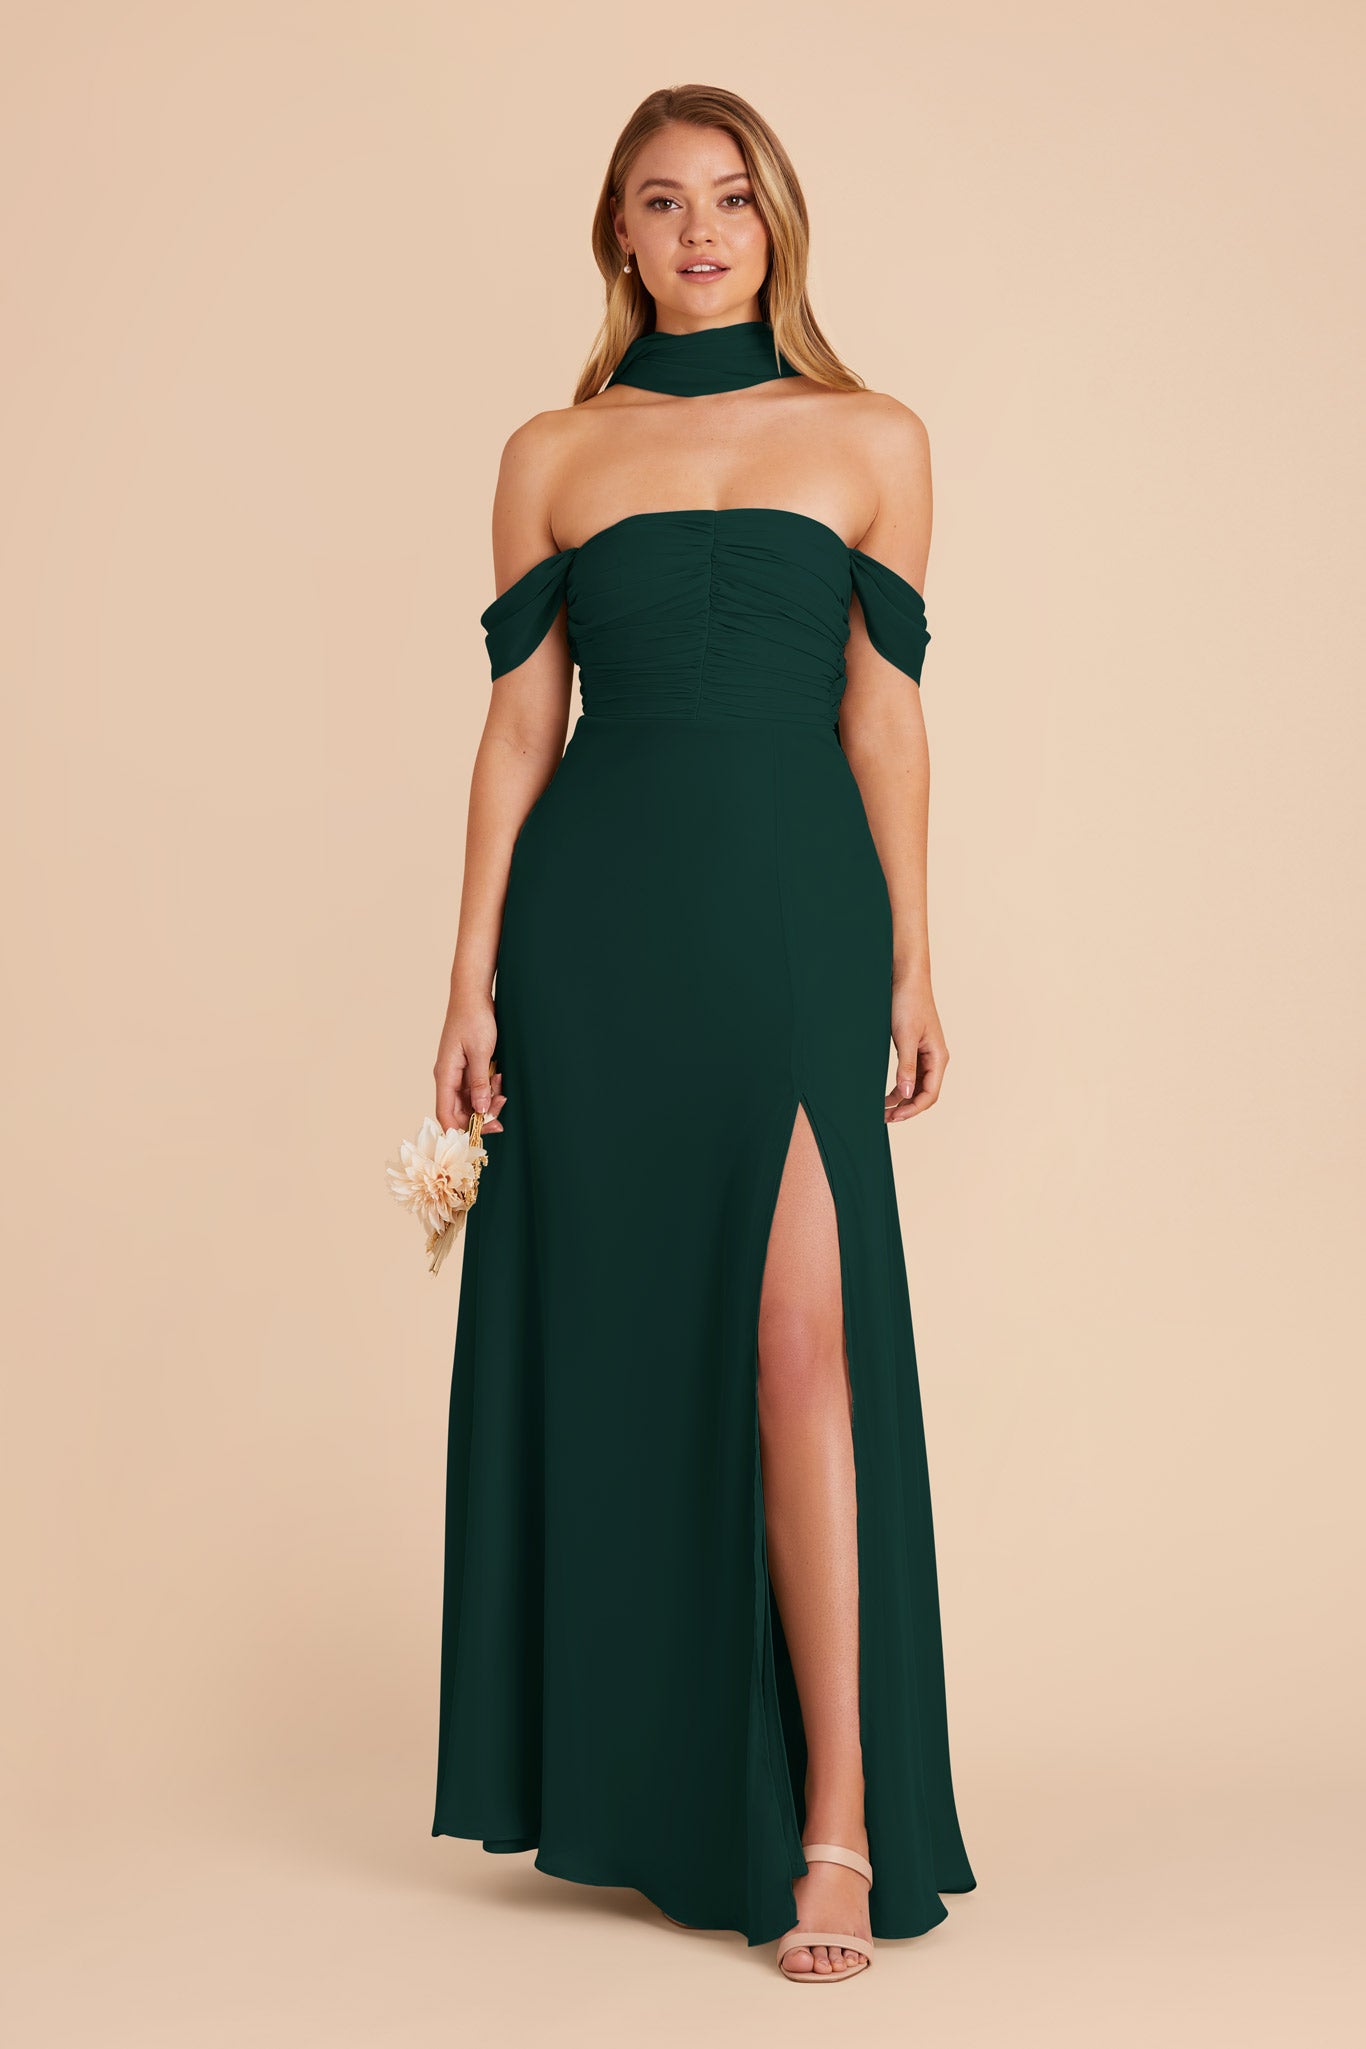 Emerald Cara Chiffon Dress by Birdy Grey